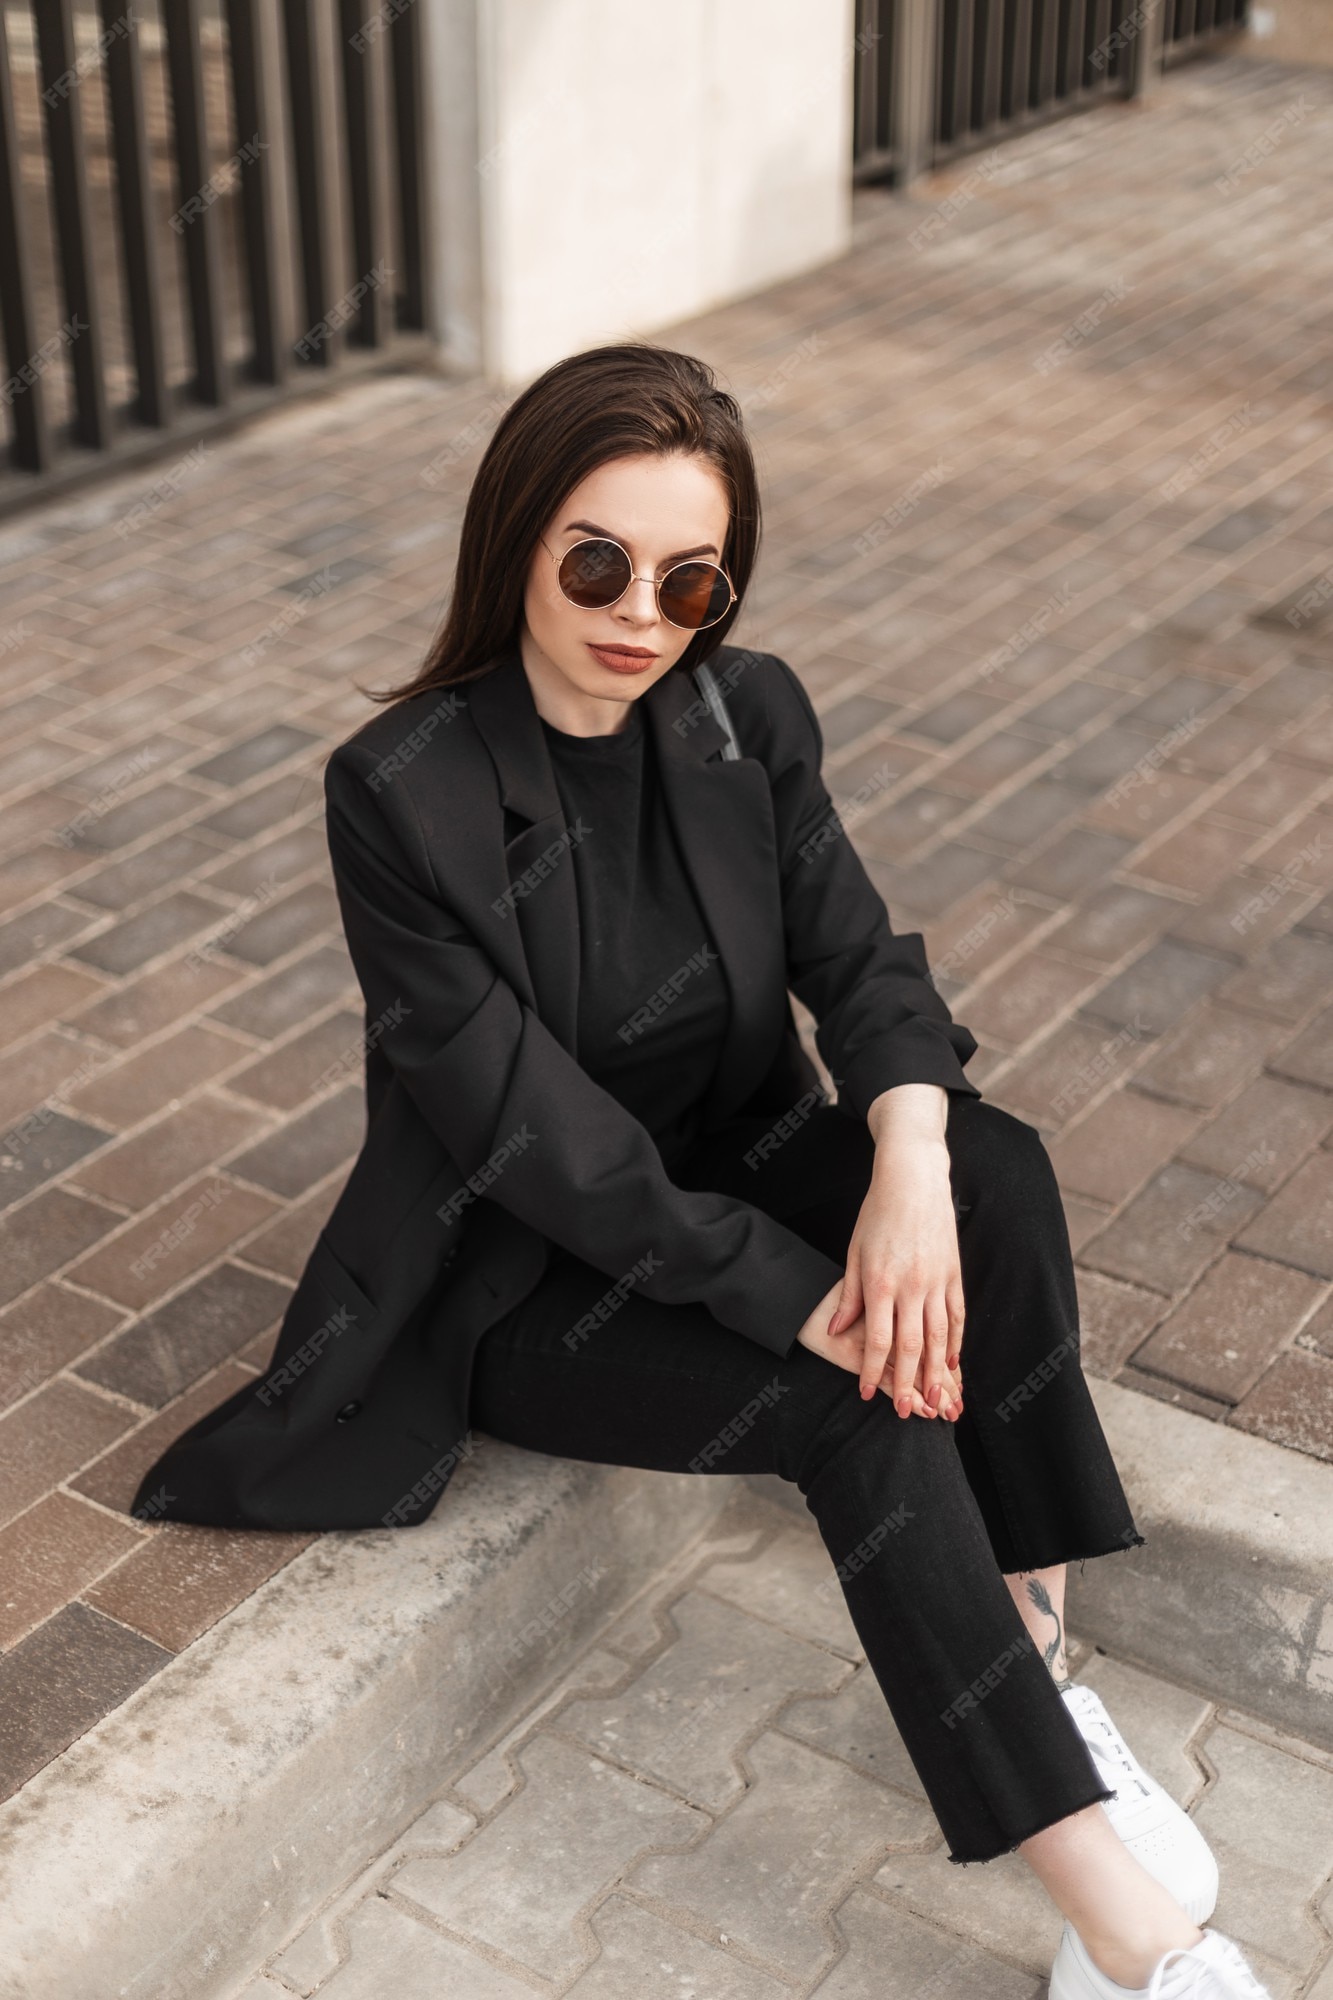 Nueva colección juvenil de elegantes chaquetas de elegante mujer hermosa en pantalones de negocios camiseta con negro de moda se sienta en la calle. | Foto Premium